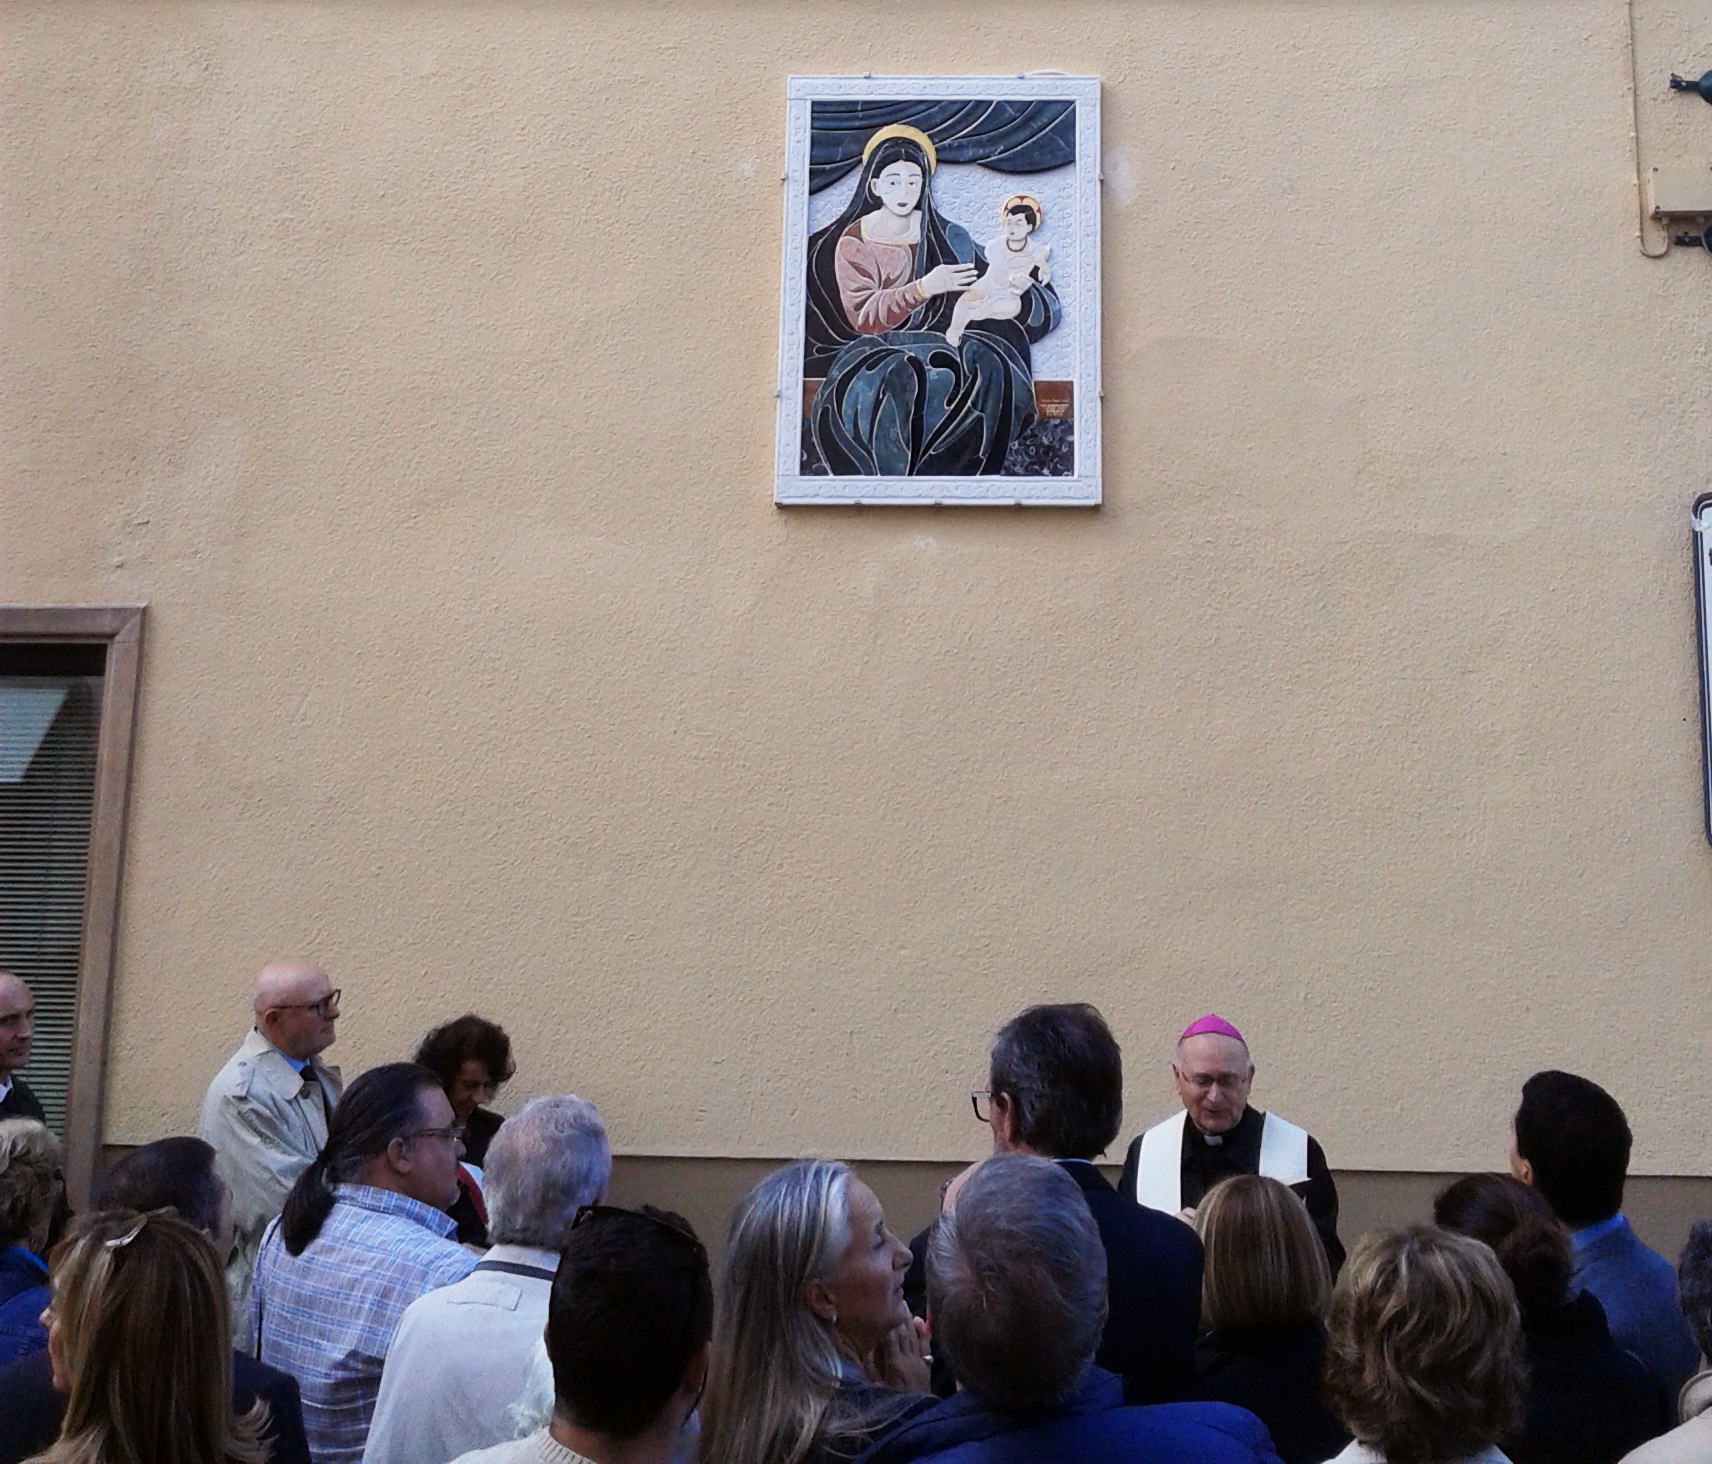 Il legame tra la “Madonna dei Miracoli” e i lucchesi rivive grazie alla tarsia realizzata da Liceo artistico “Stagi” di Pietrasanta